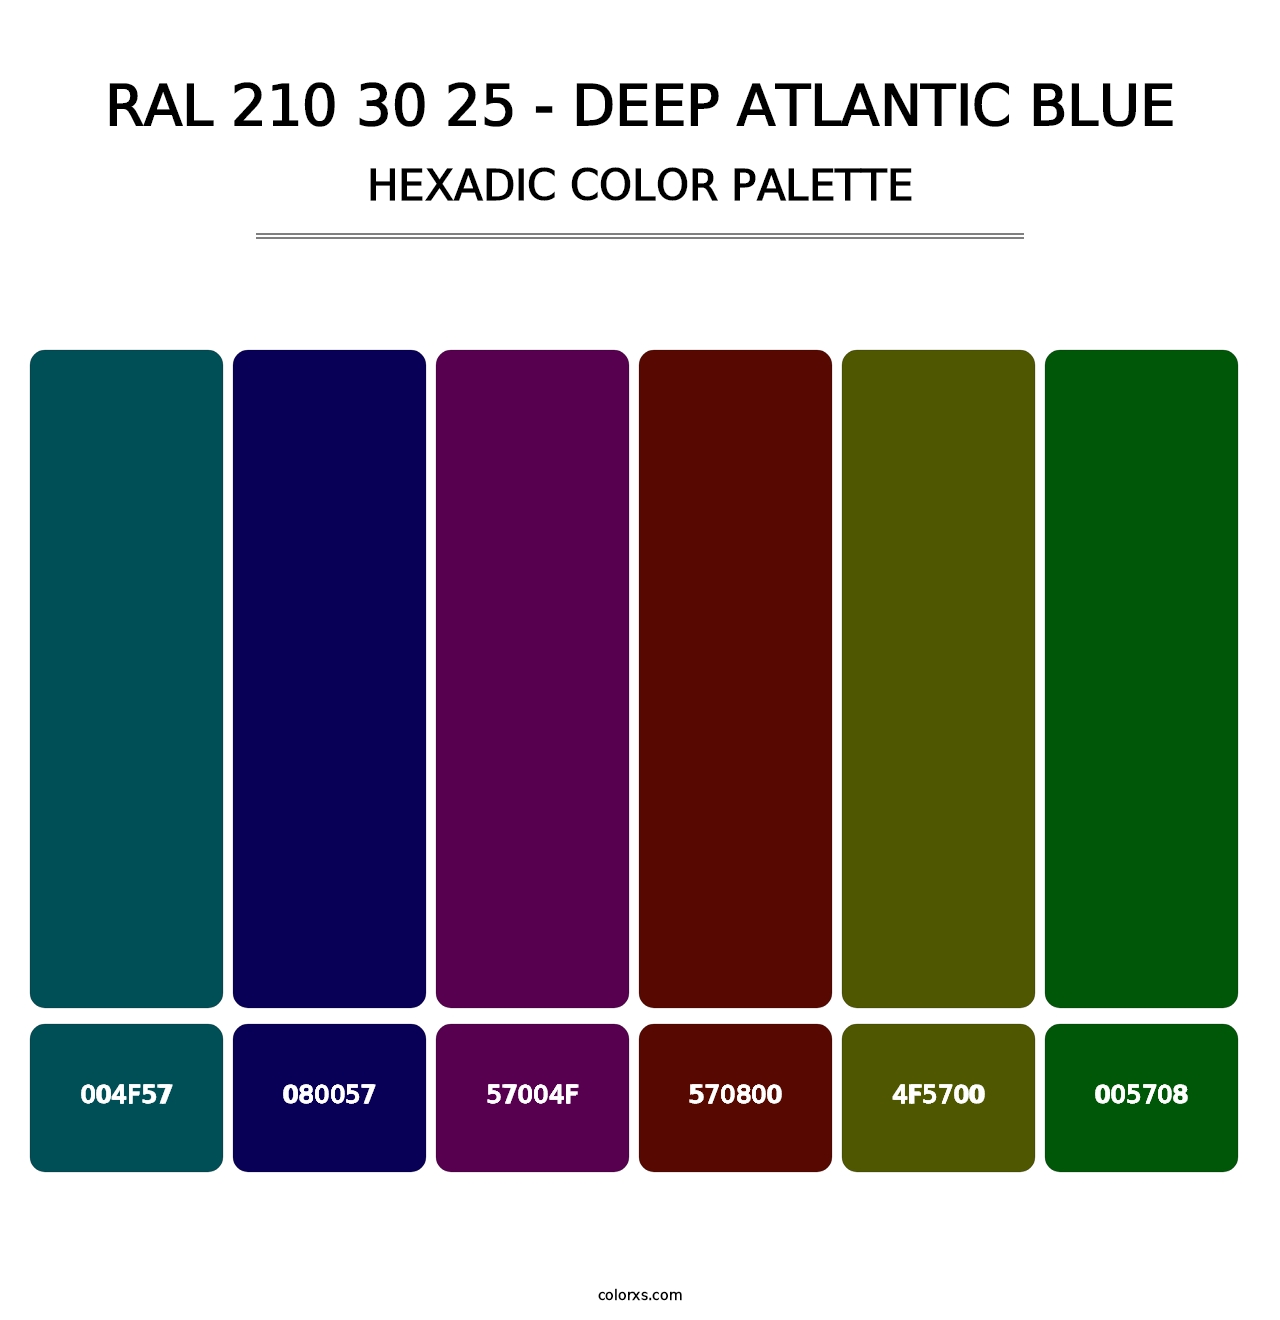 RAL 210 30 25 - Deep Atlantic Blue - Hexadic Color Palette